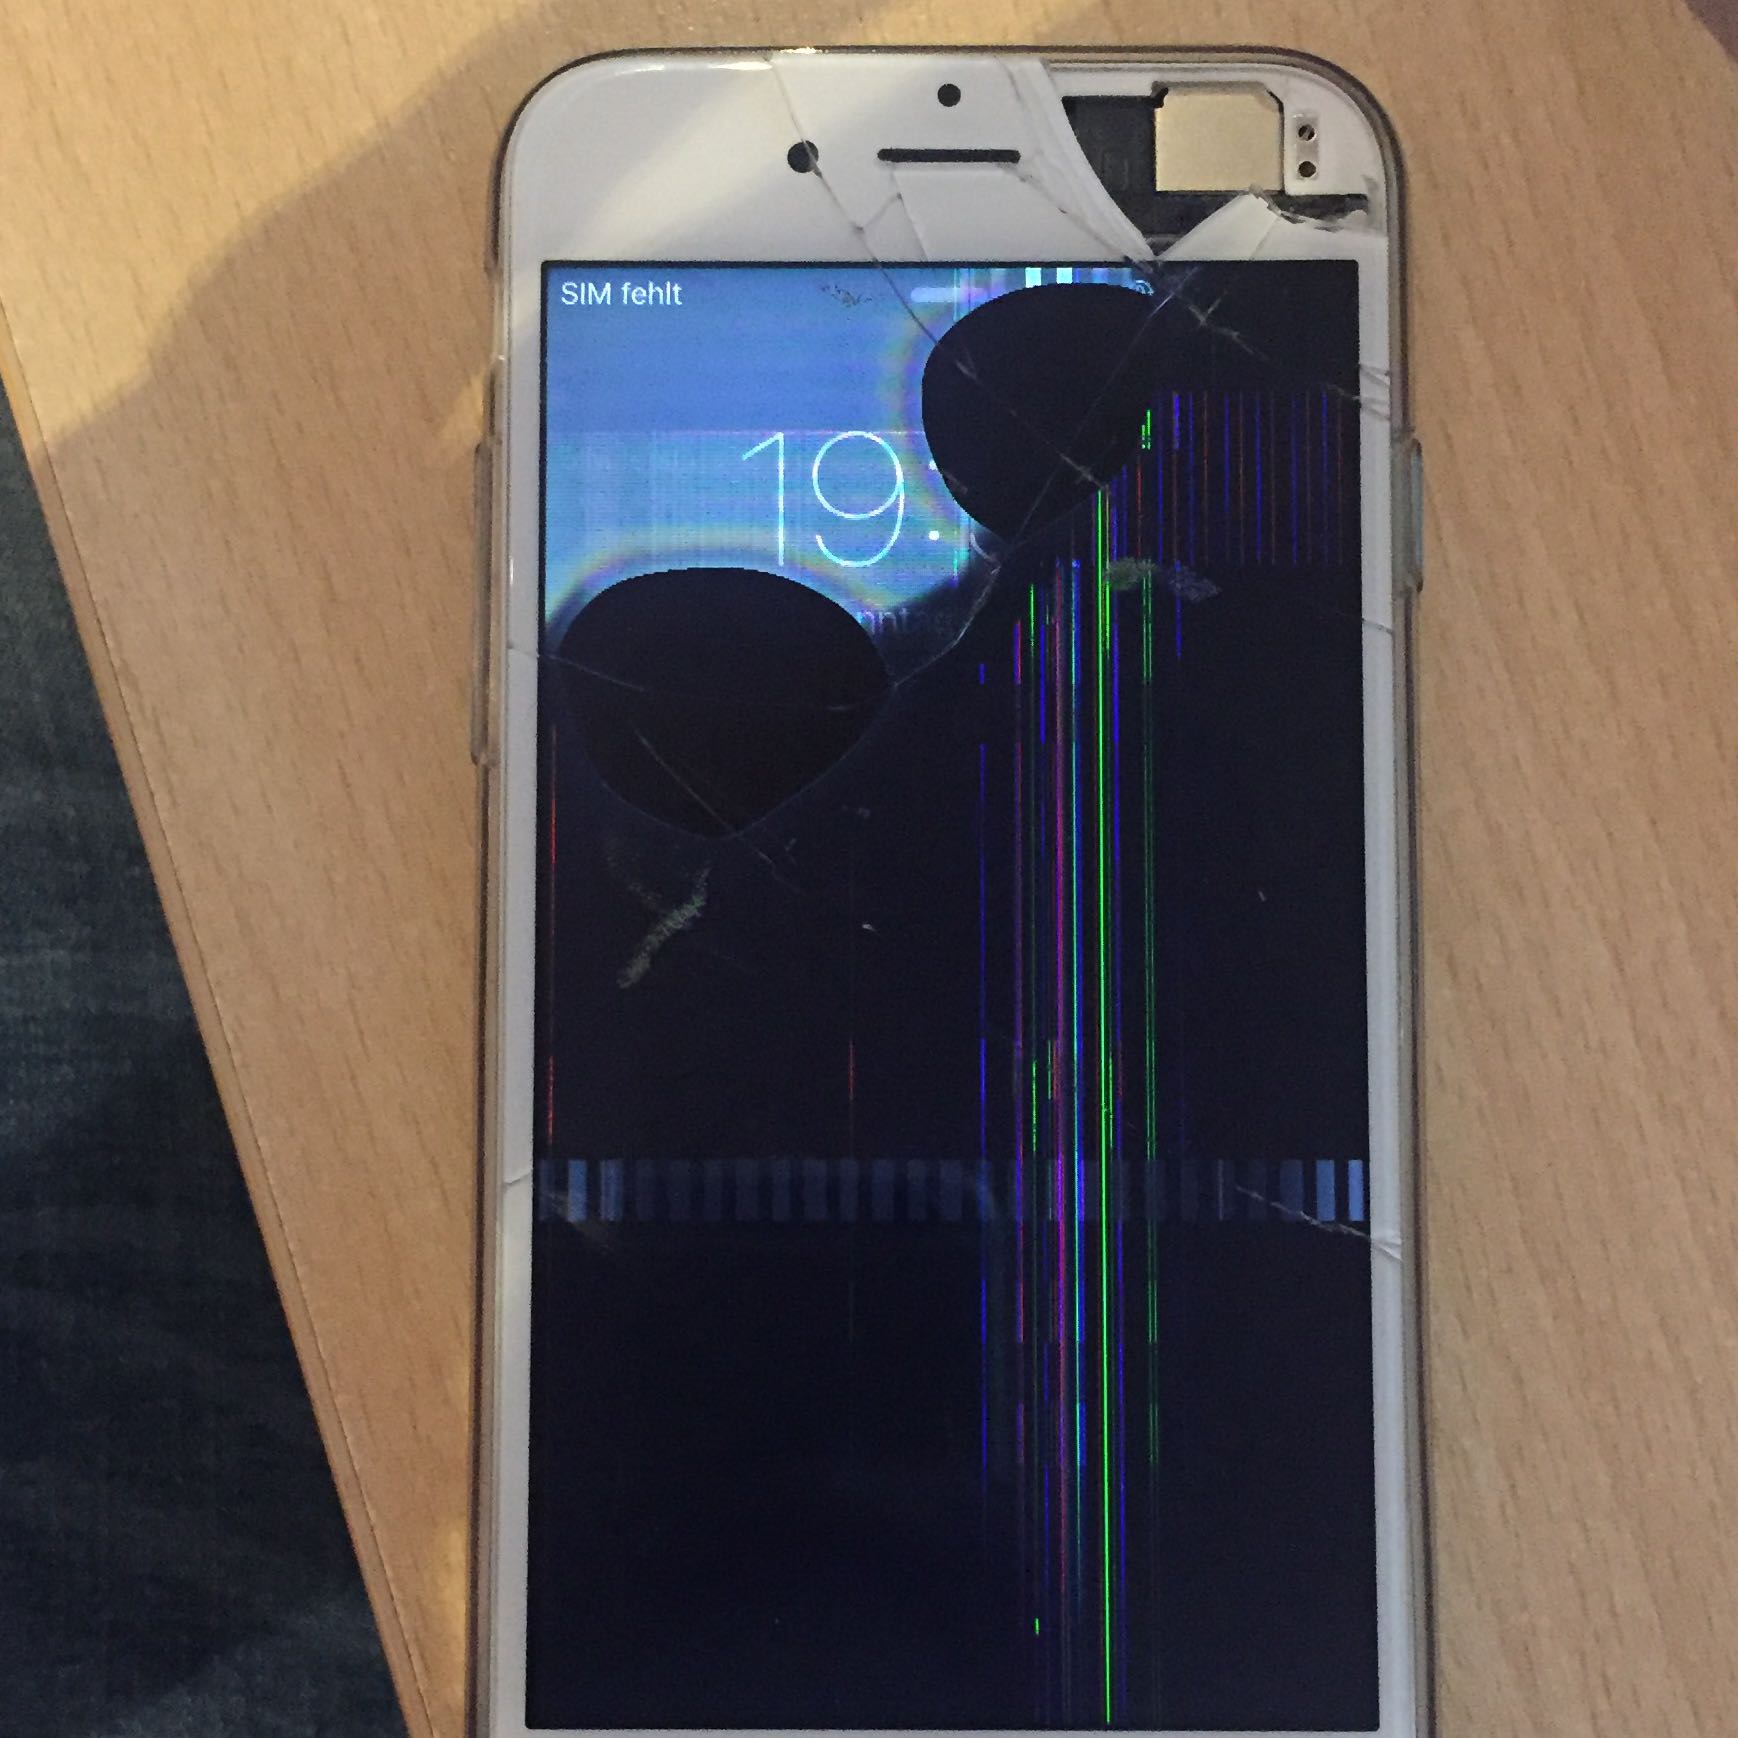 IPhone 6 runtergefallen und jetzt kaputt? (Handy, Display)